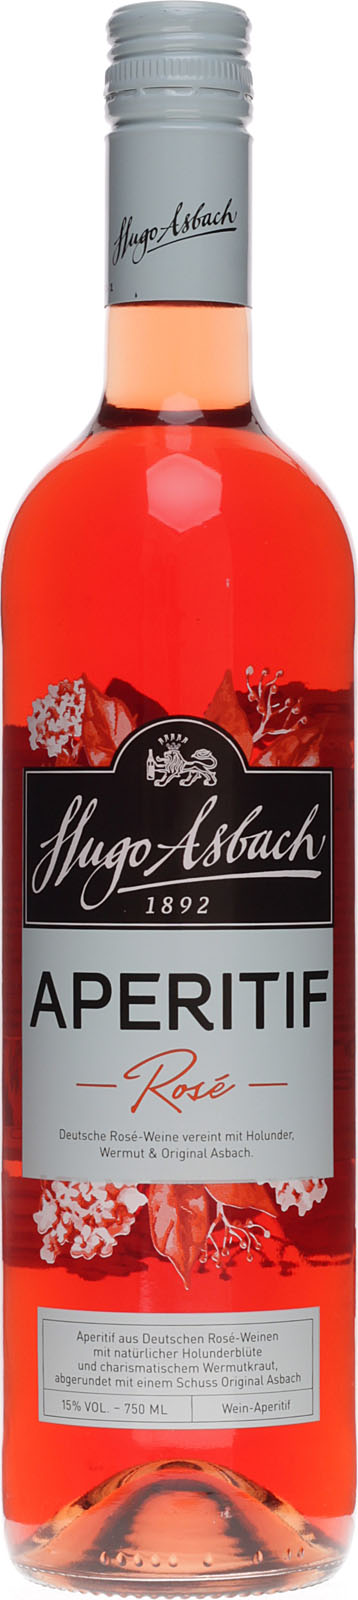 Asbach Aperitif Rose 0,75 Liter 15 % Vol. aus fruchtige